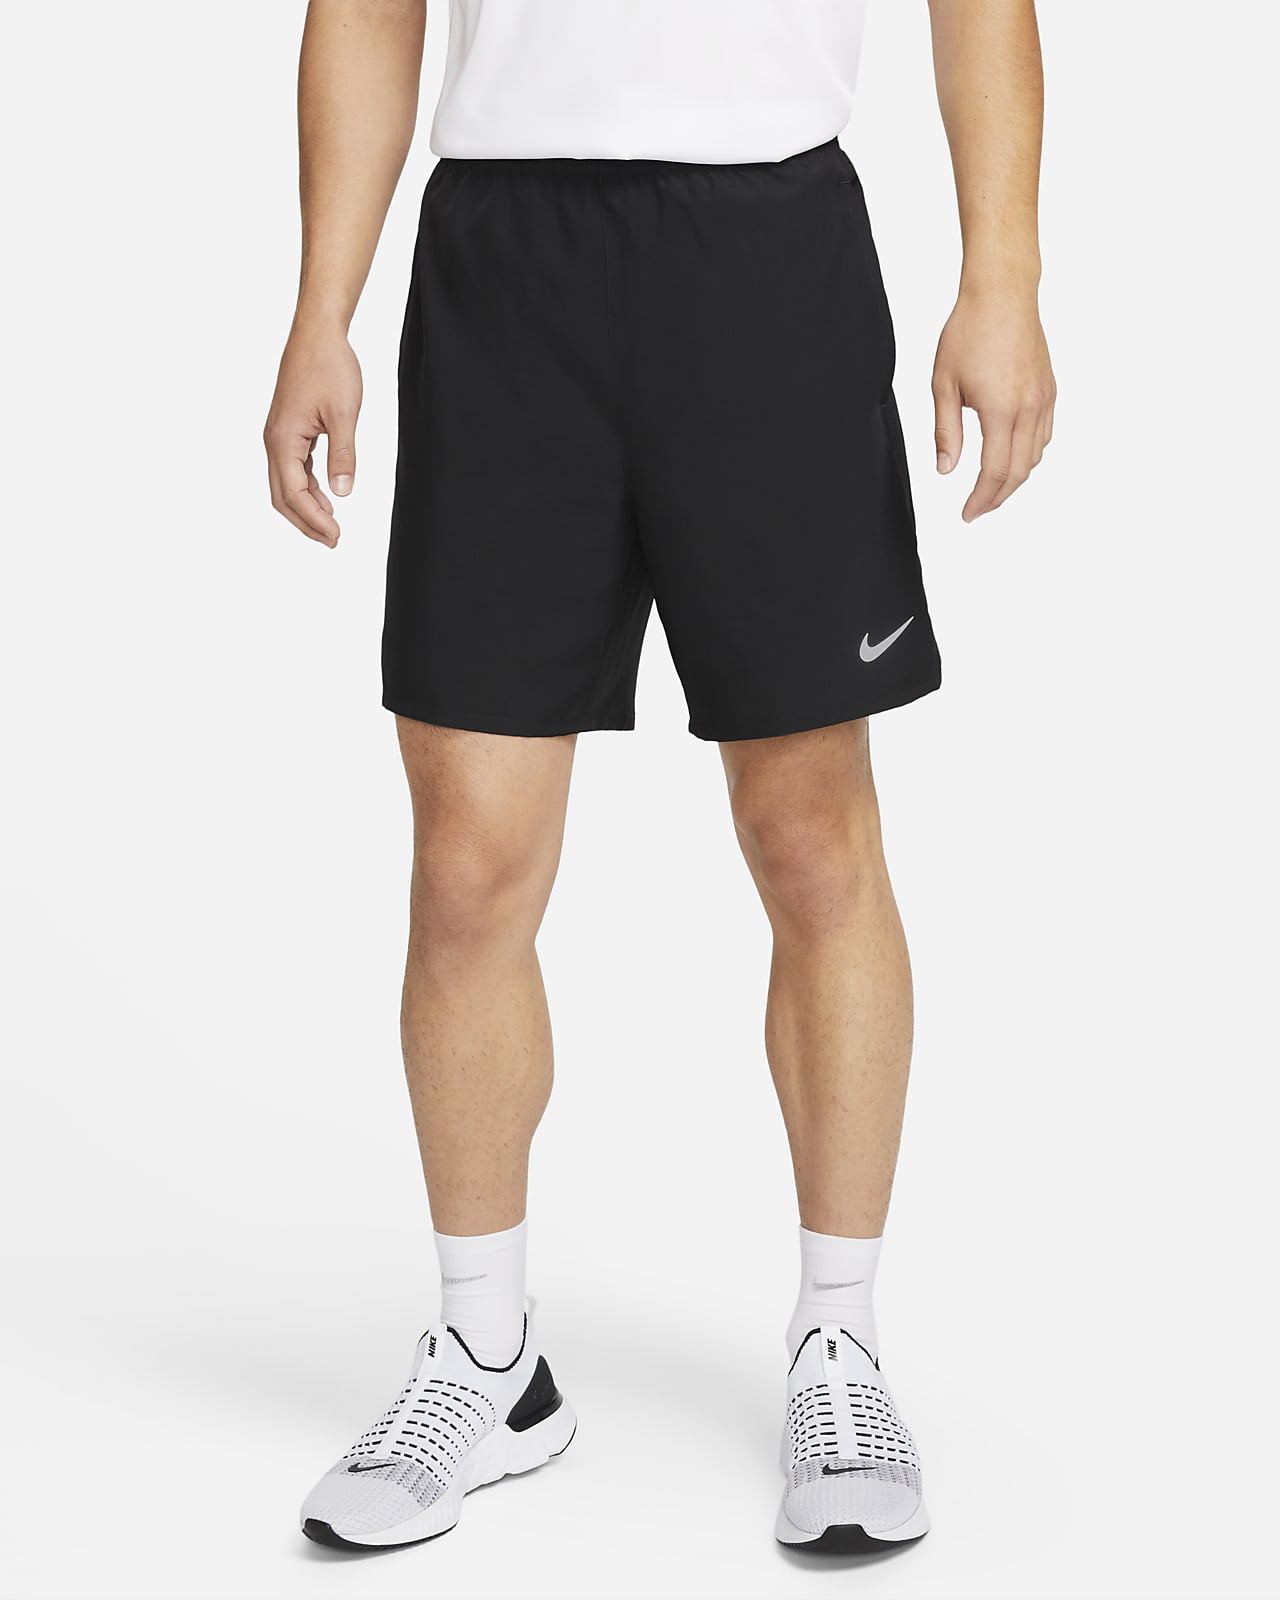 Nike Dri-FIT Challenger Men's 7" Unlined Versatile Shorts